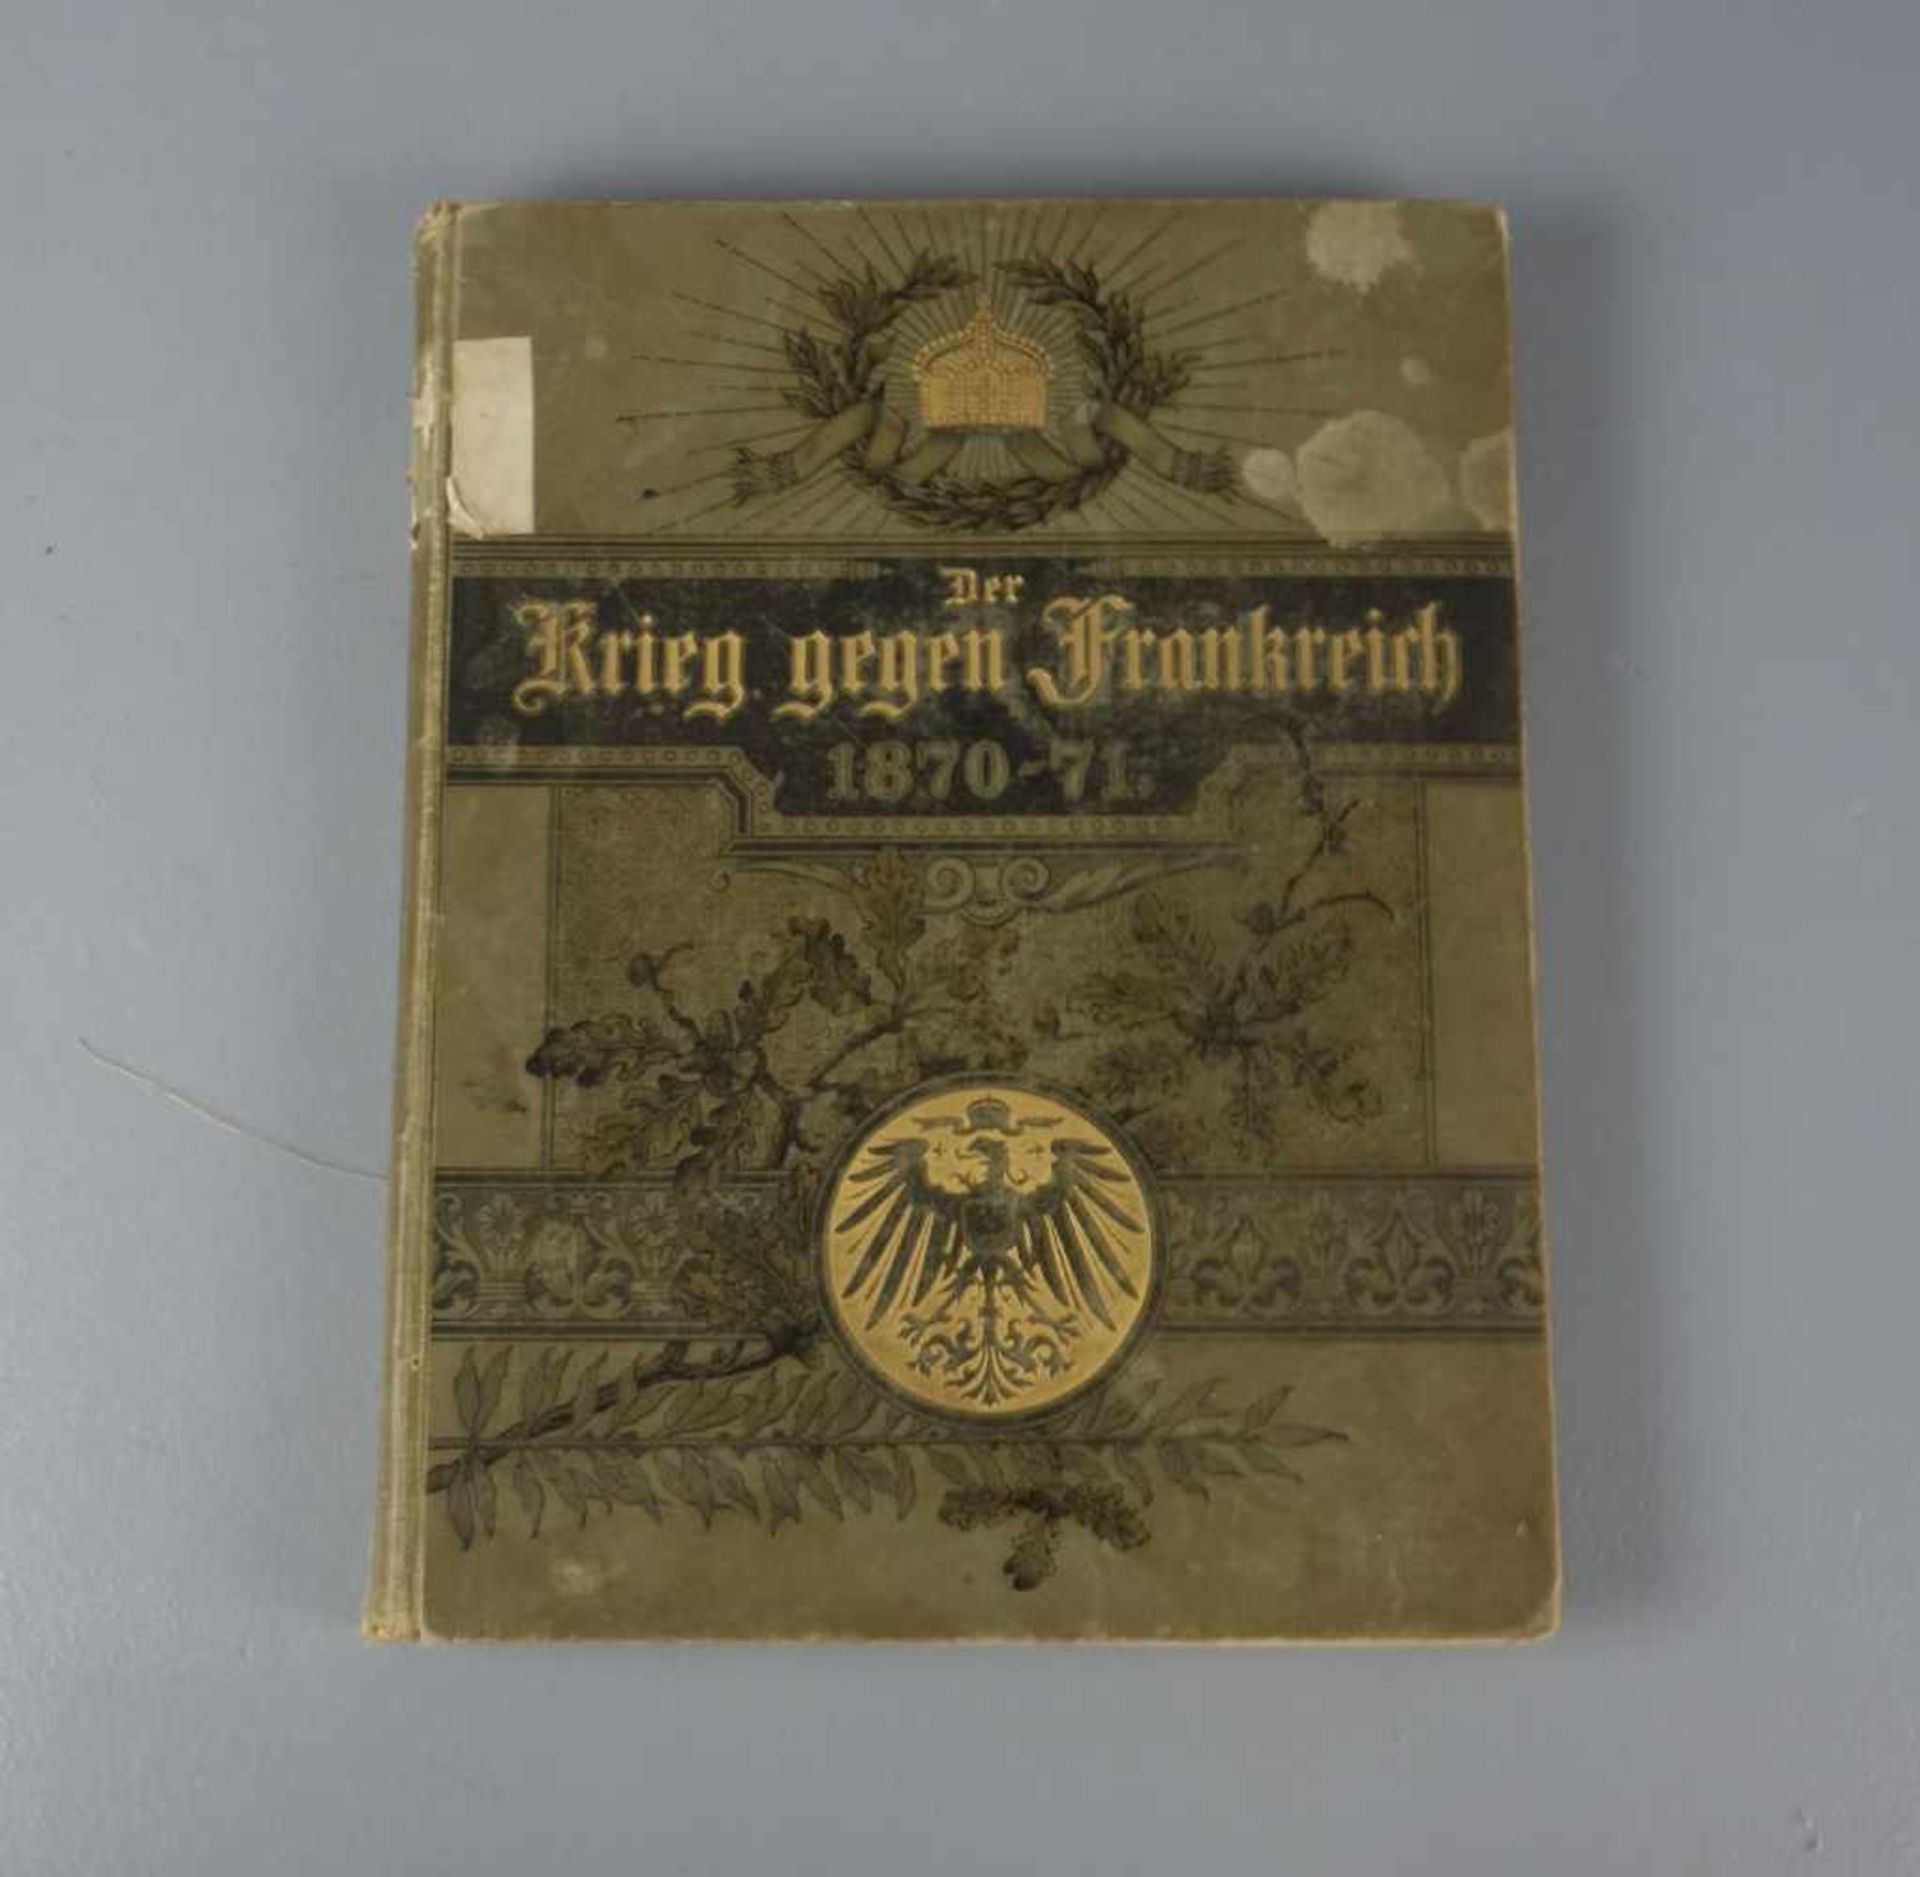 BUCH: "Der Krieg gegen Frankreich 1870-71", grüner Einband mit goldfarbenen Akzentuierungen. Berlin,